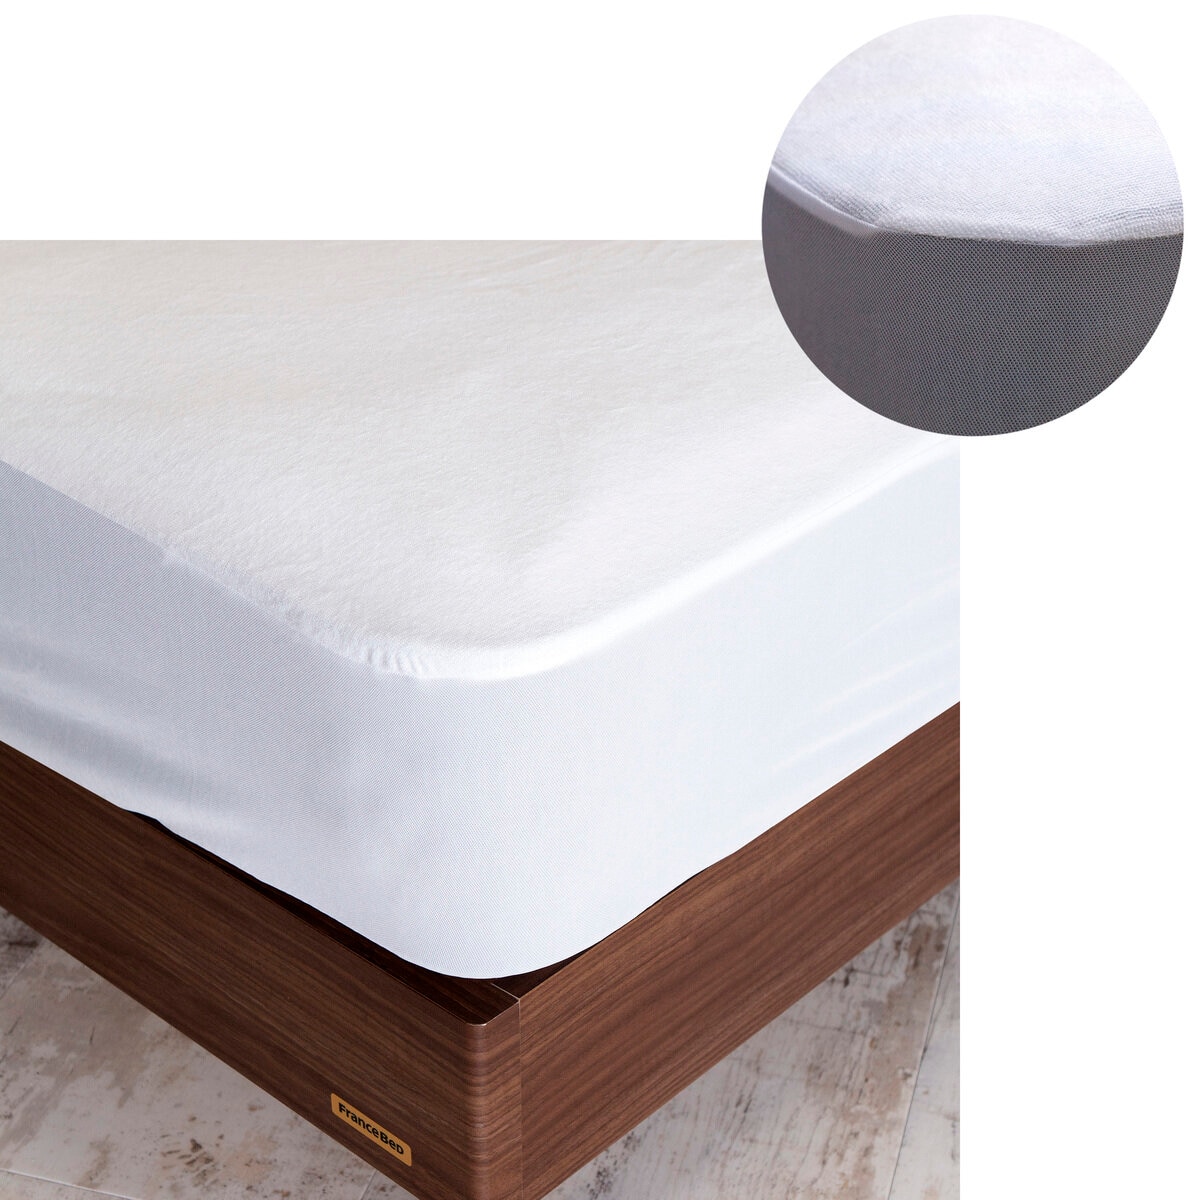 Protect a bed マットレスプロテクター セミダブル